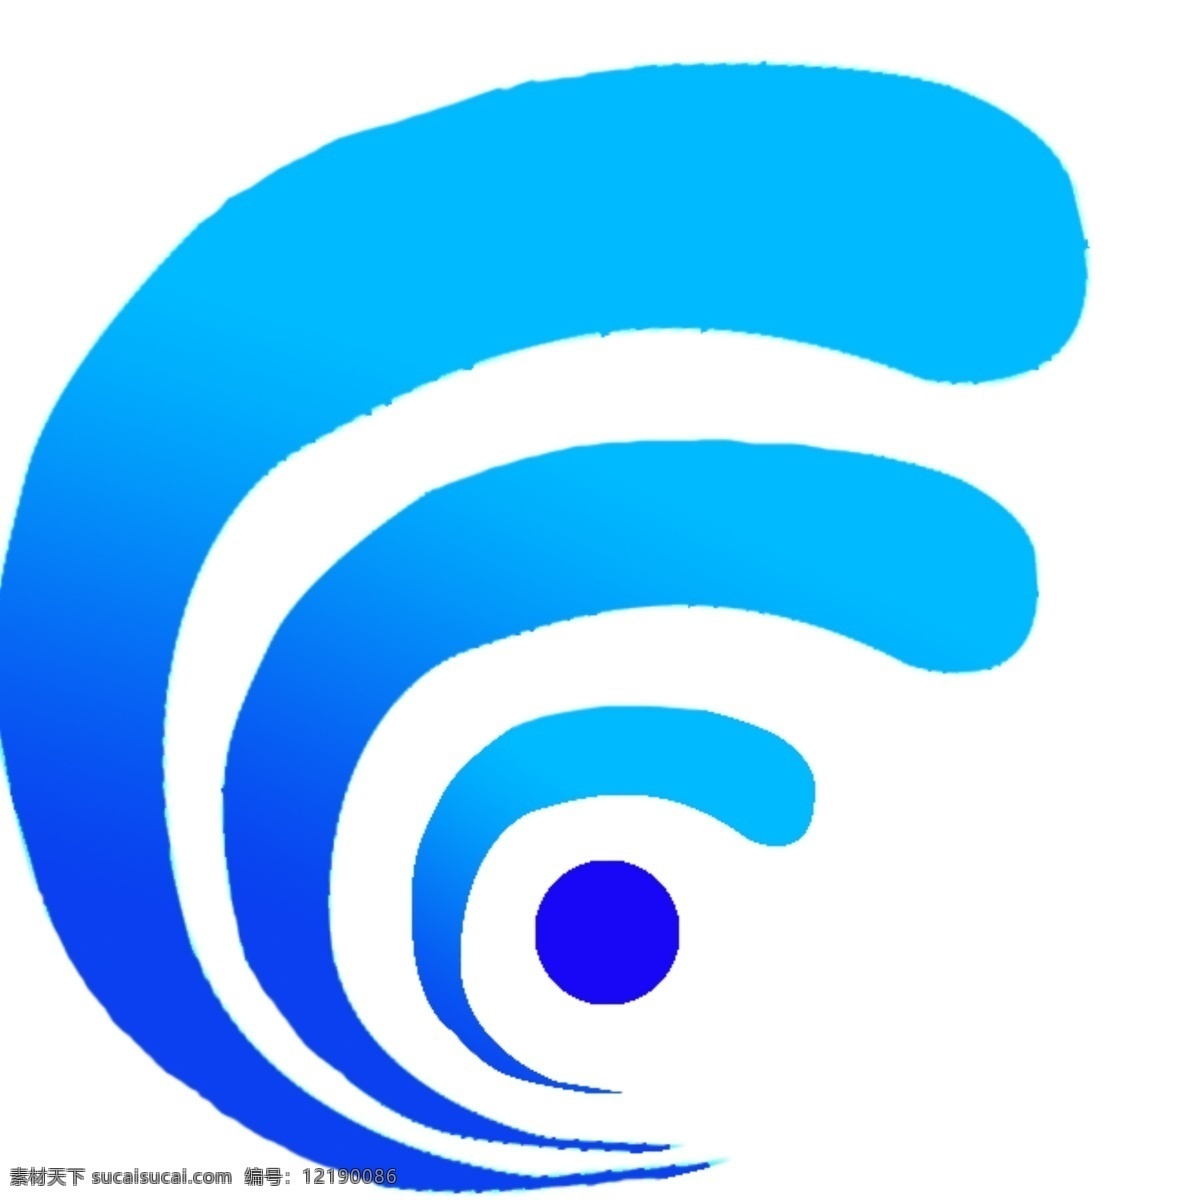 海面旋涡 海浪曲线 海浪线 波浪线 波浪曲线 蓝色线条 蓝色图标 标识 logo 旋涡 海浪logo